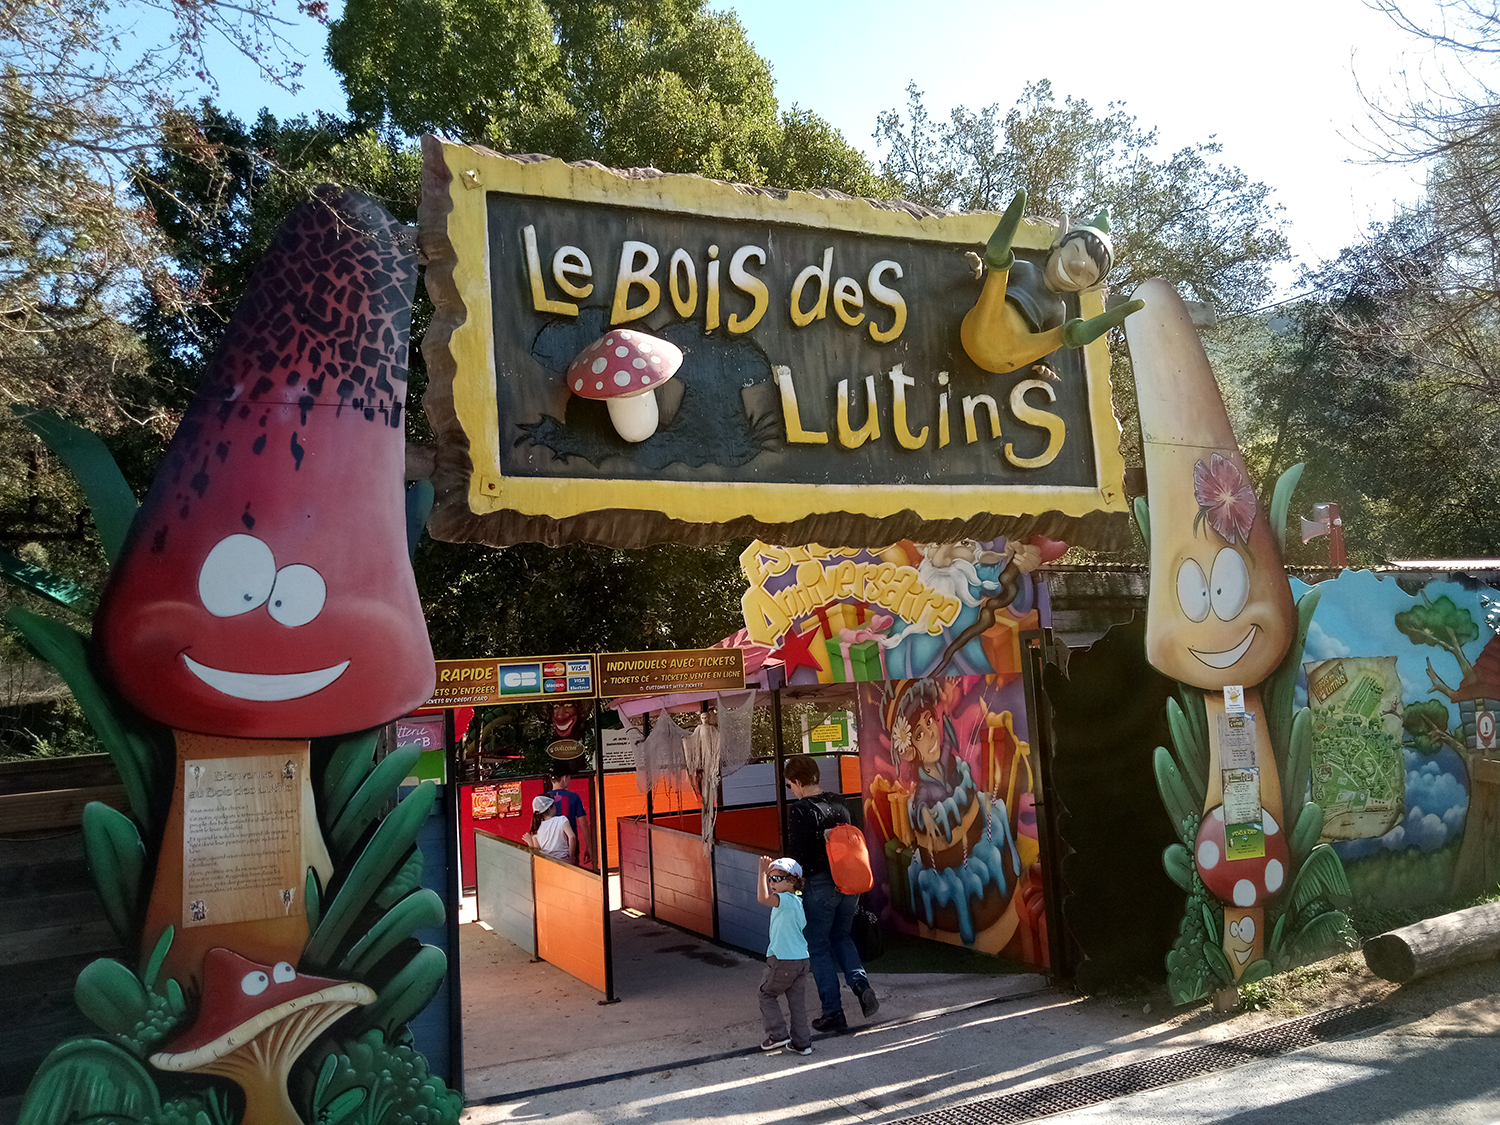 Visiter le Parc des lutins : découvre le Bois des lutins à Villeneuve-Loubet !